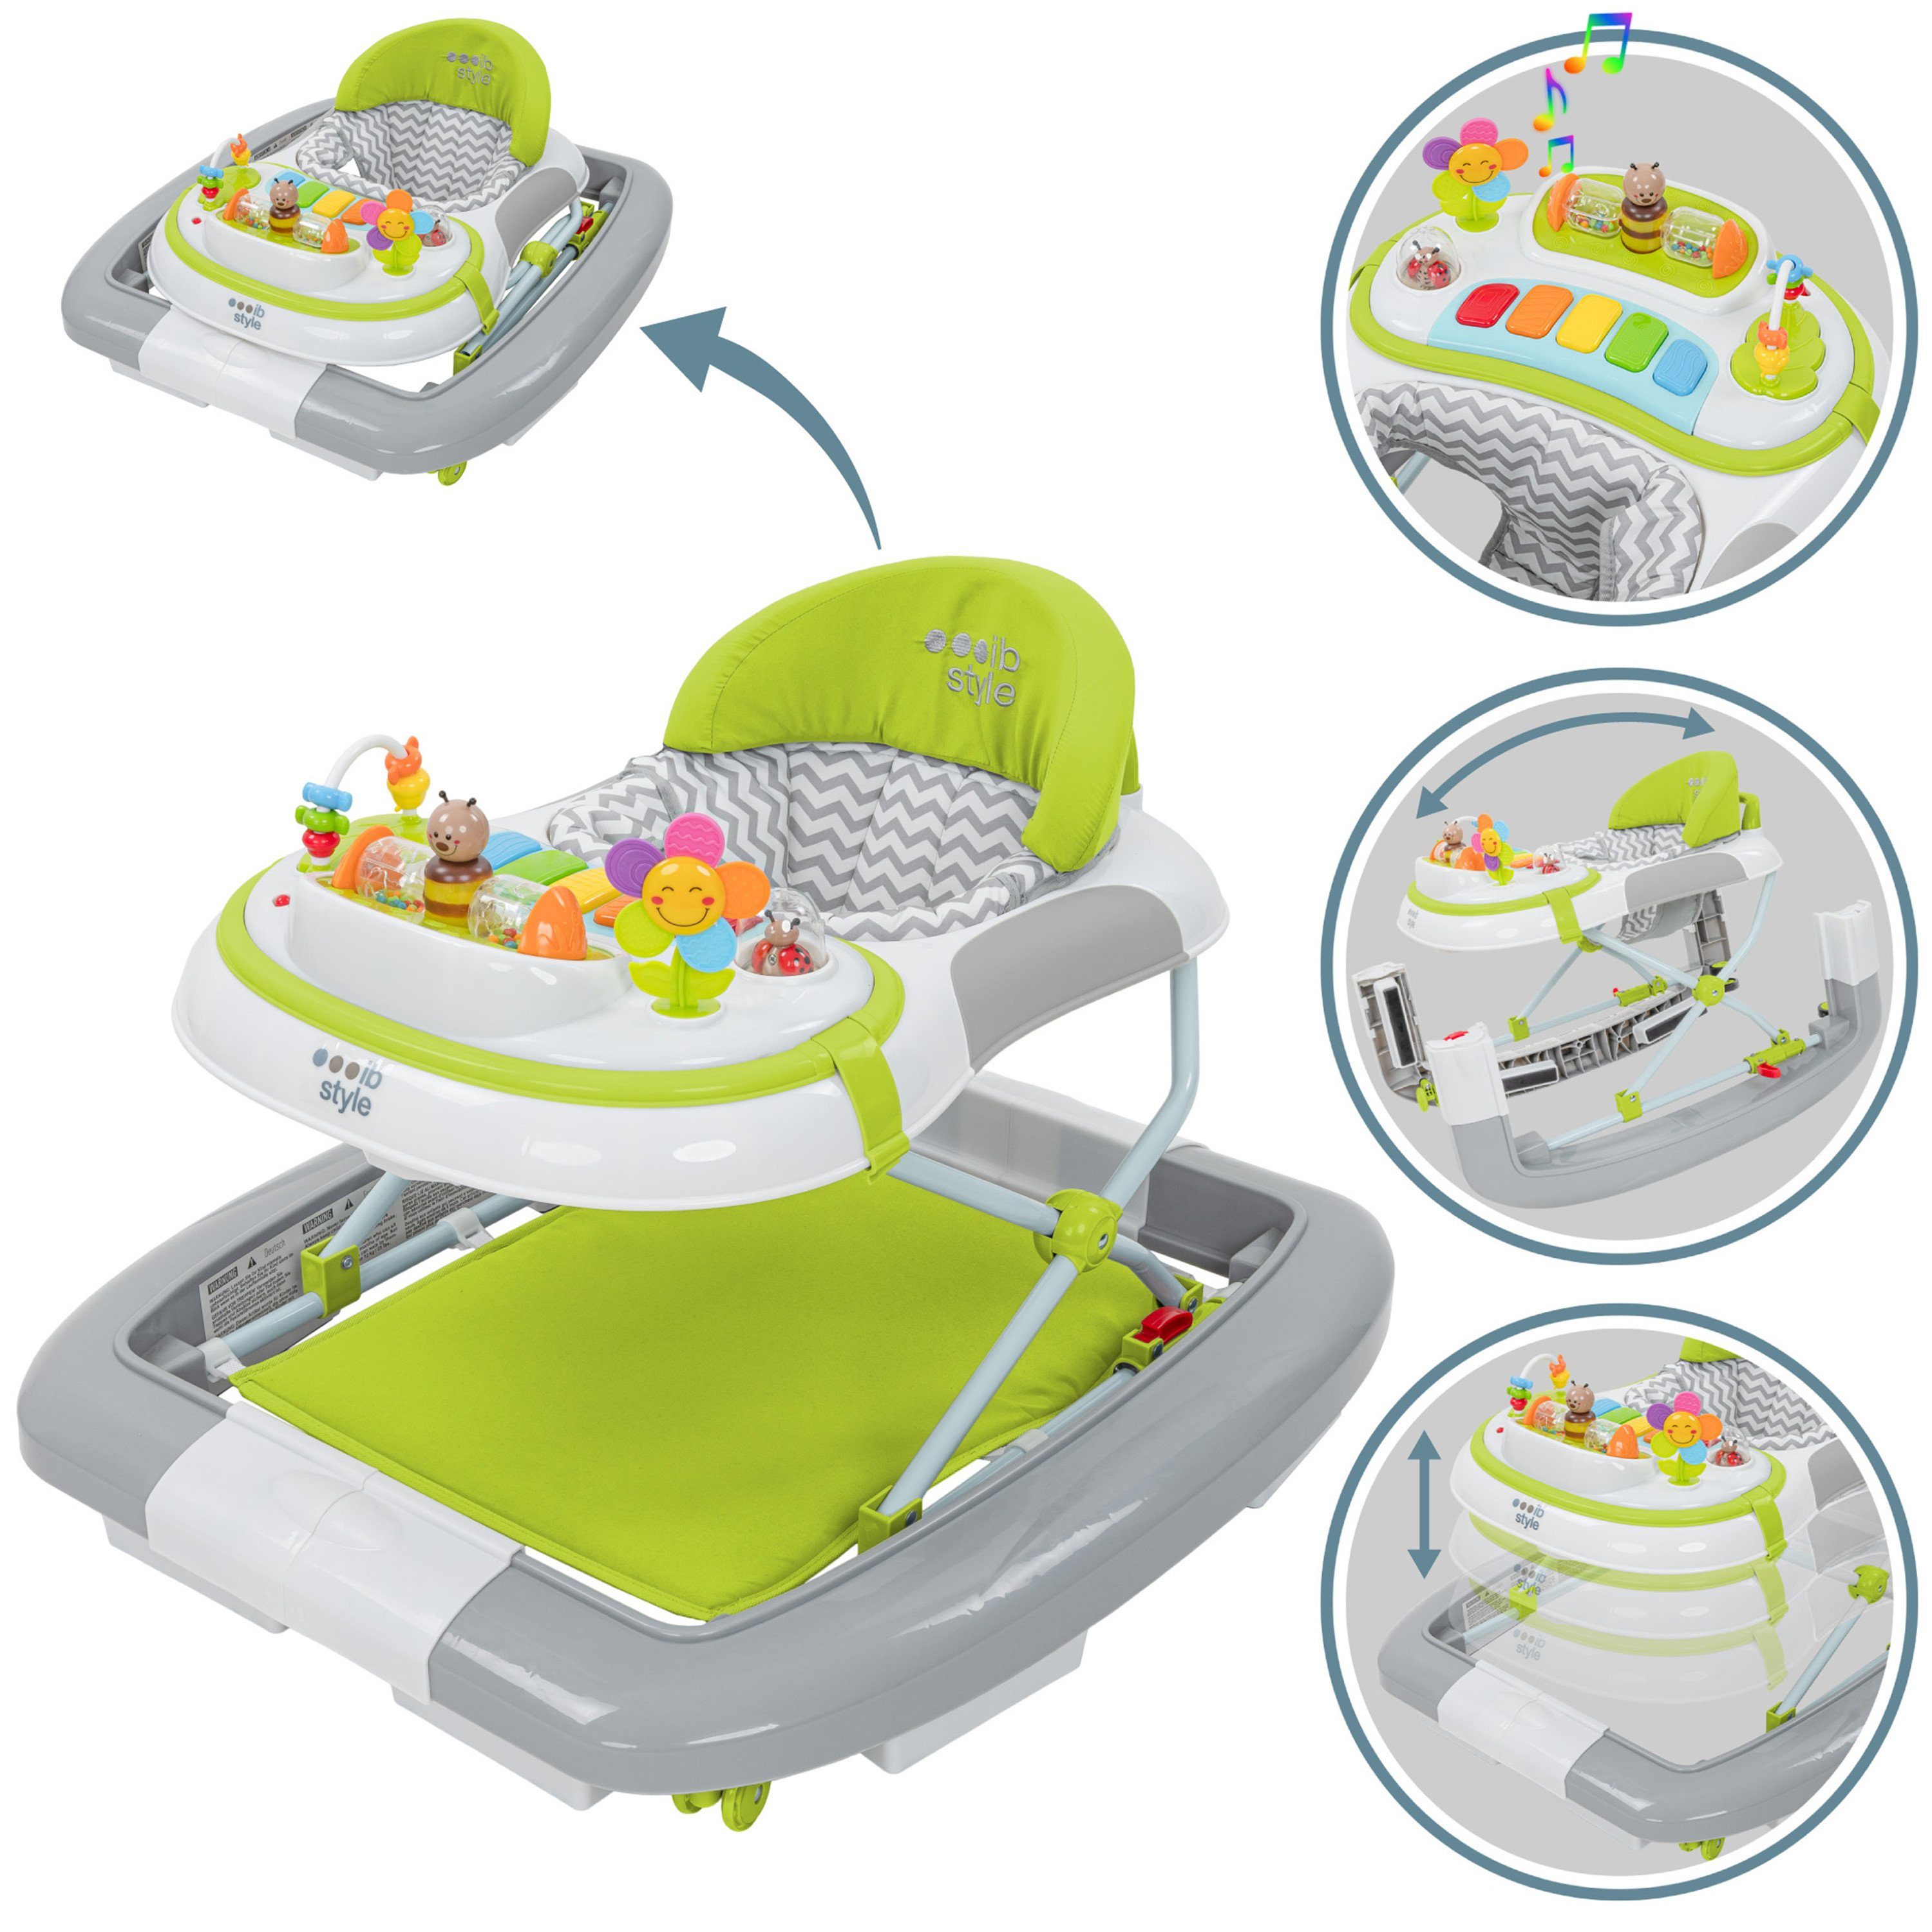 elektronischem Wave Lauflernwagen style Babywalker ib & Grün, Spielelement Lauflernhilfe mit Schaukelfunktion